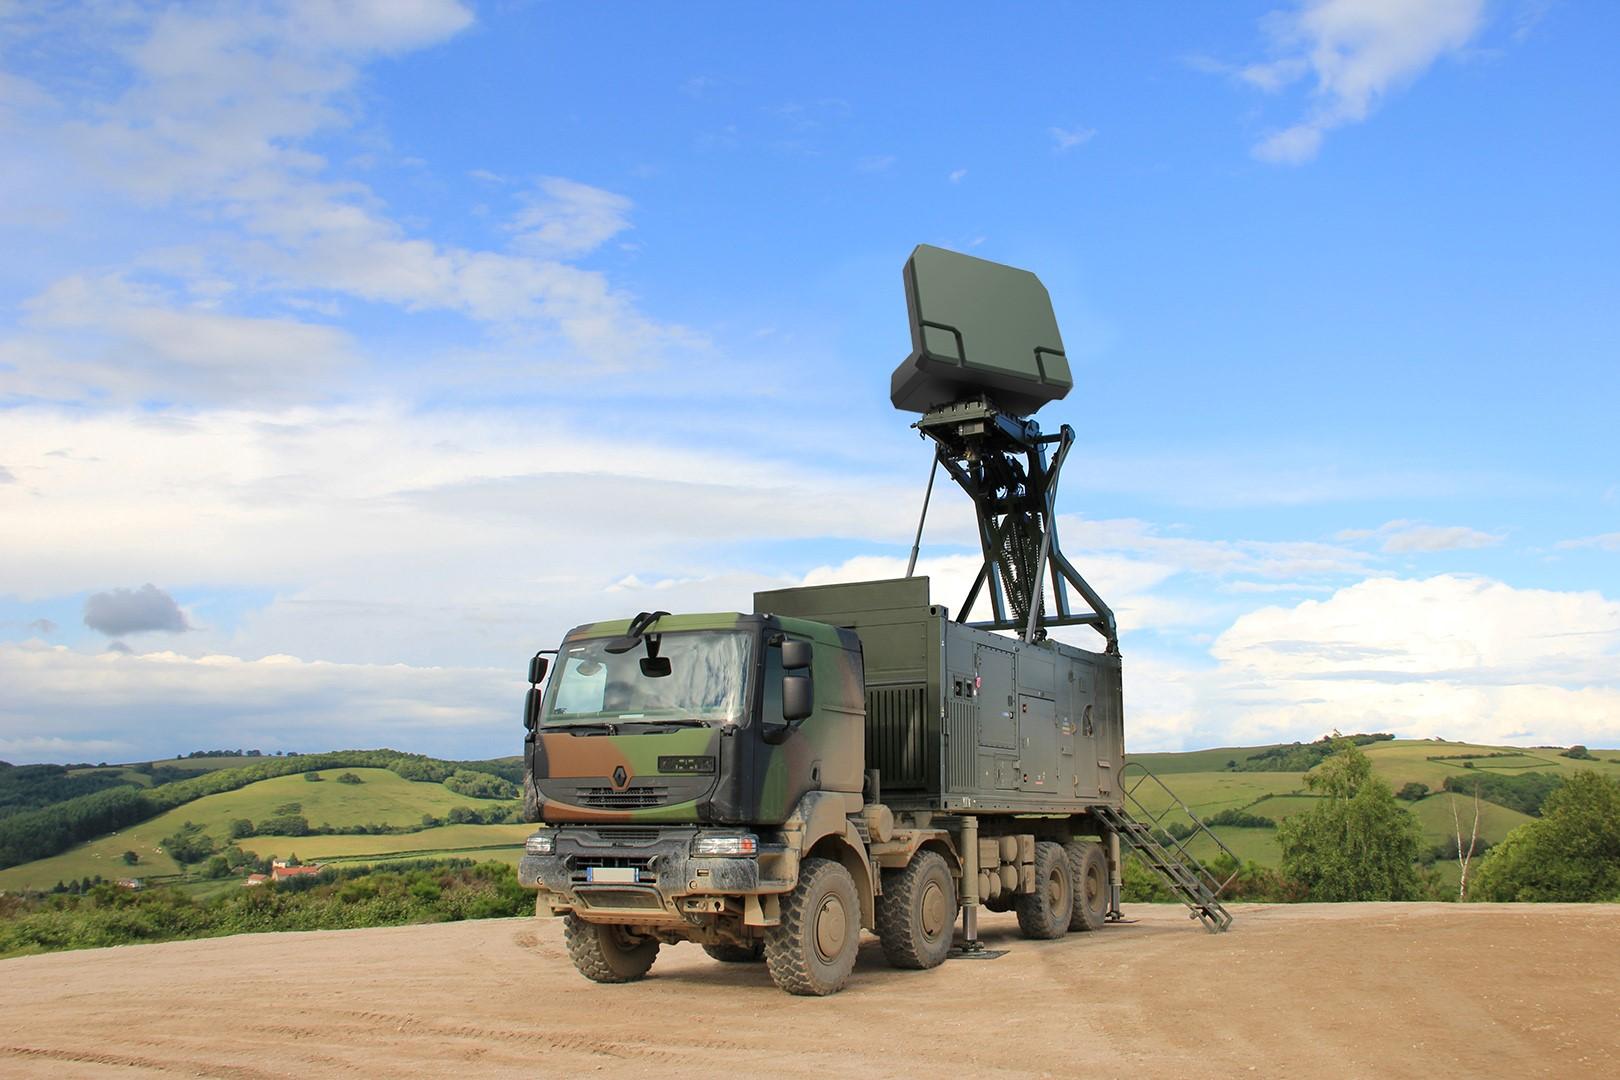 Ukraine will receive French air defense radars